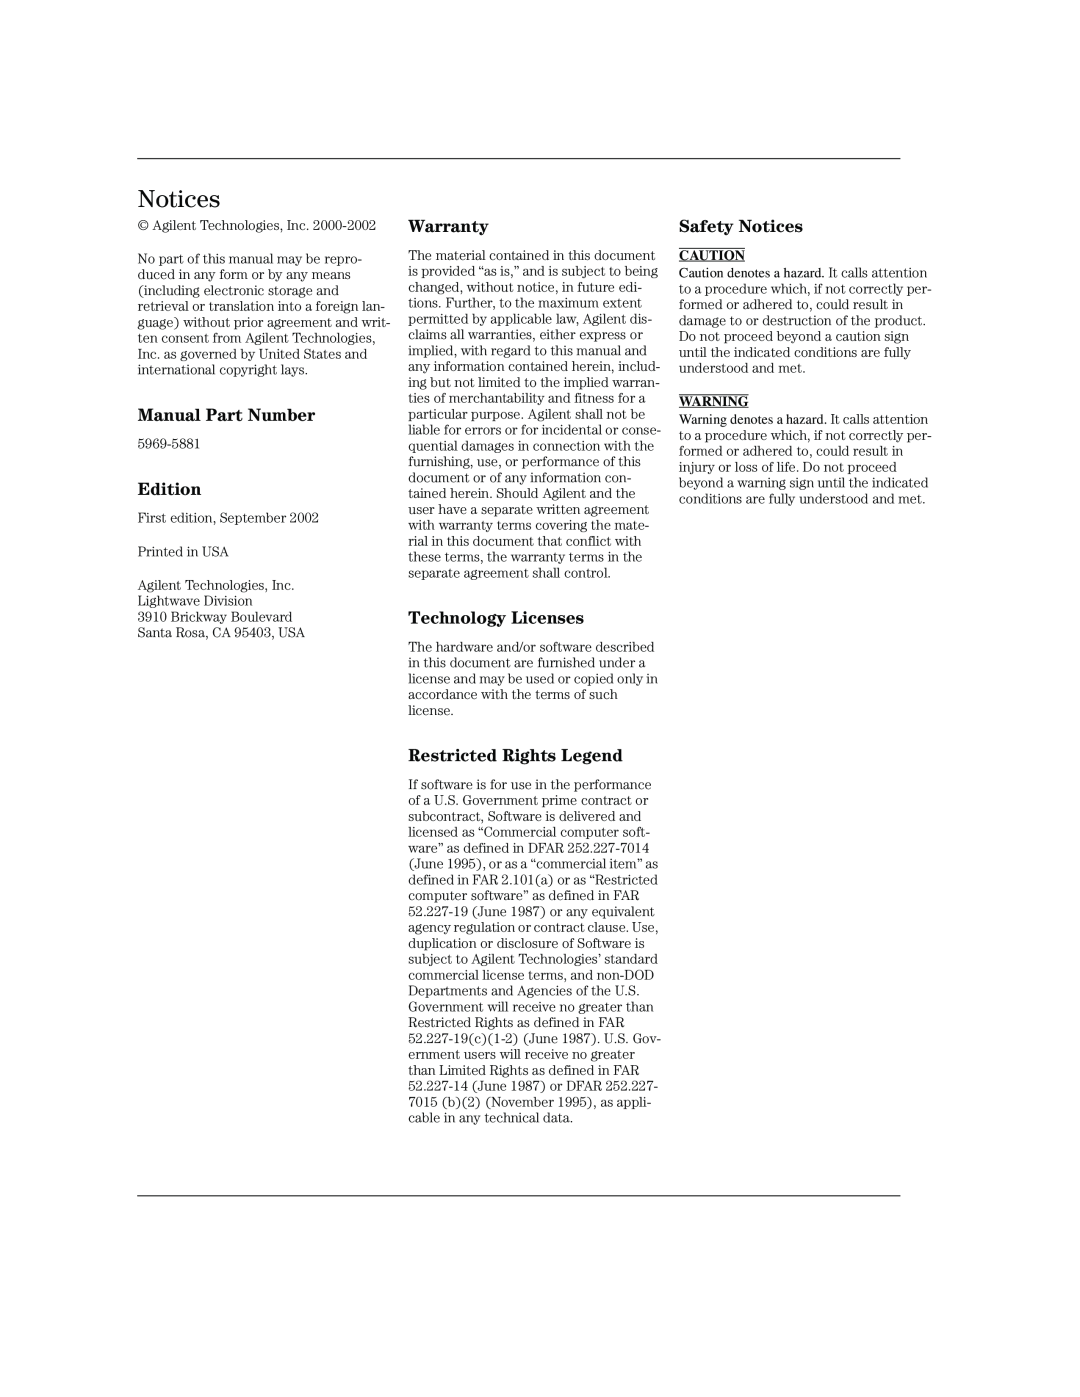 Agilent Technologies B, 86100A manual Notices, 5969-5881, Agilent Technologies, Inc Lightwave Division 